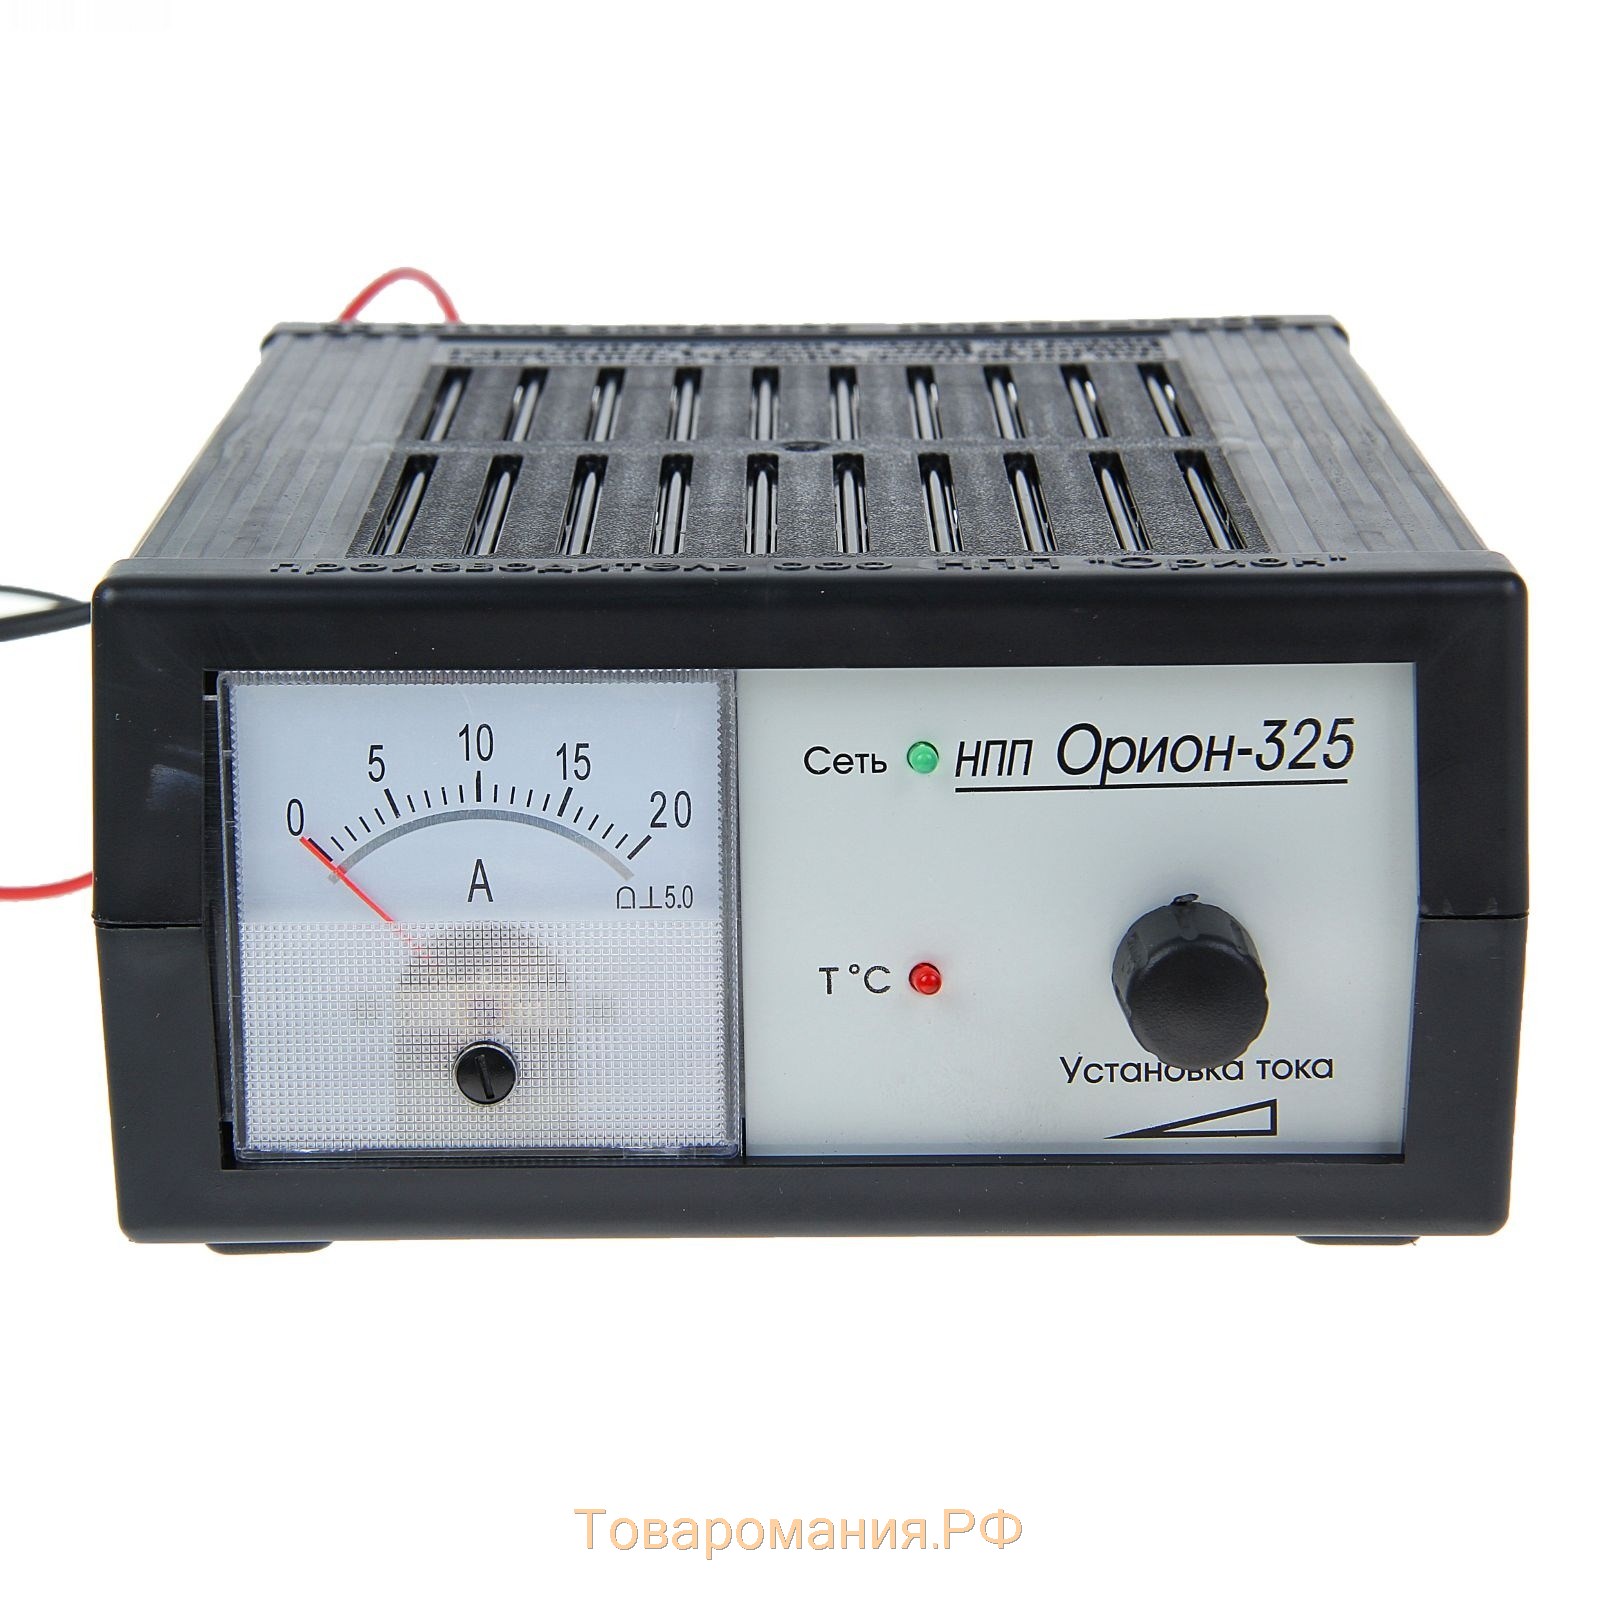 Зарядно-предпусковое устройство АКБ Вымпел-325, 0,8 - 20 А, 12 В, до 240 Ач